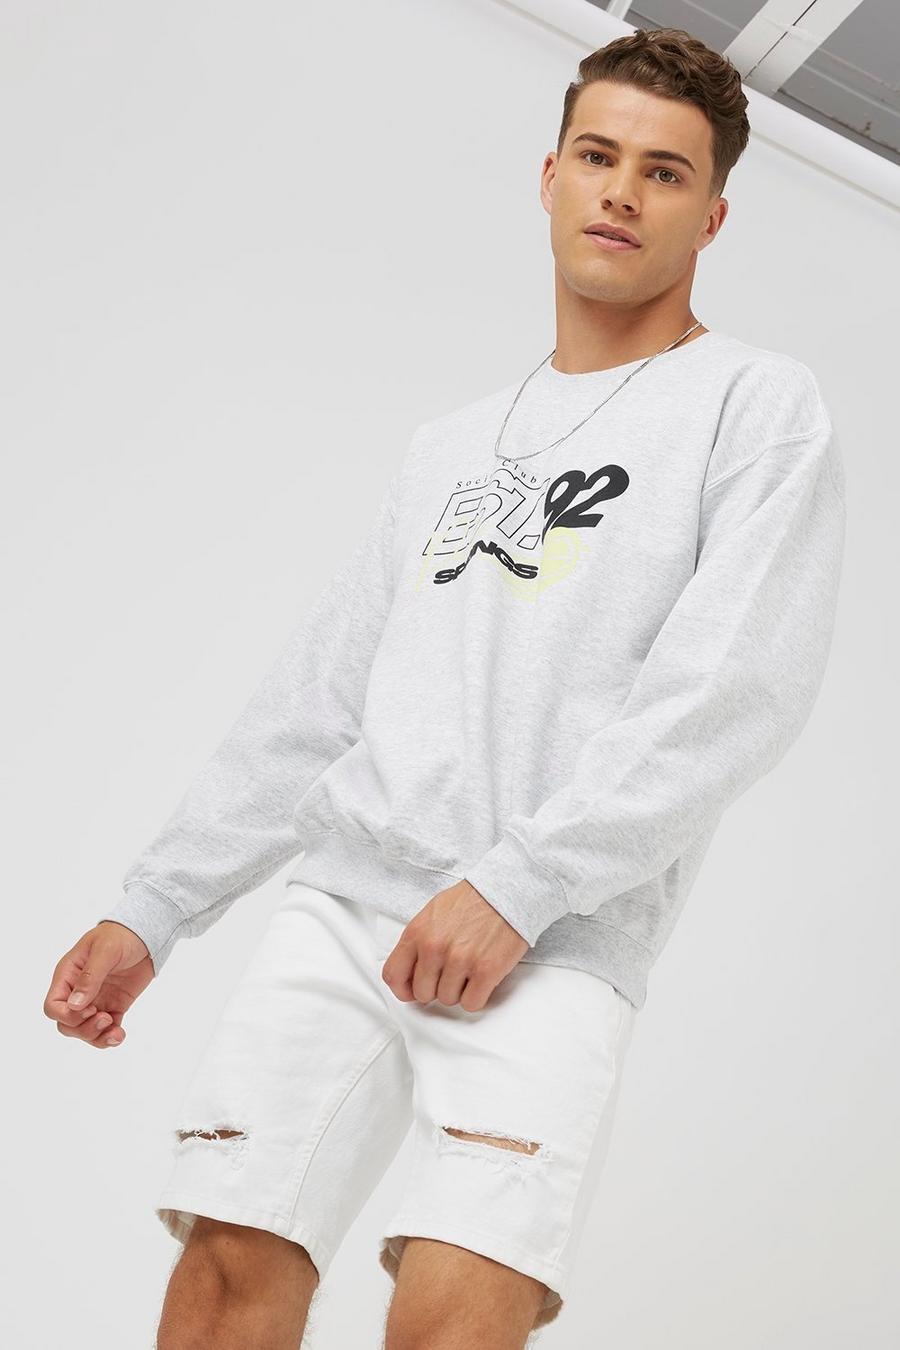 Grey Est 92 Neon Sweatshirt